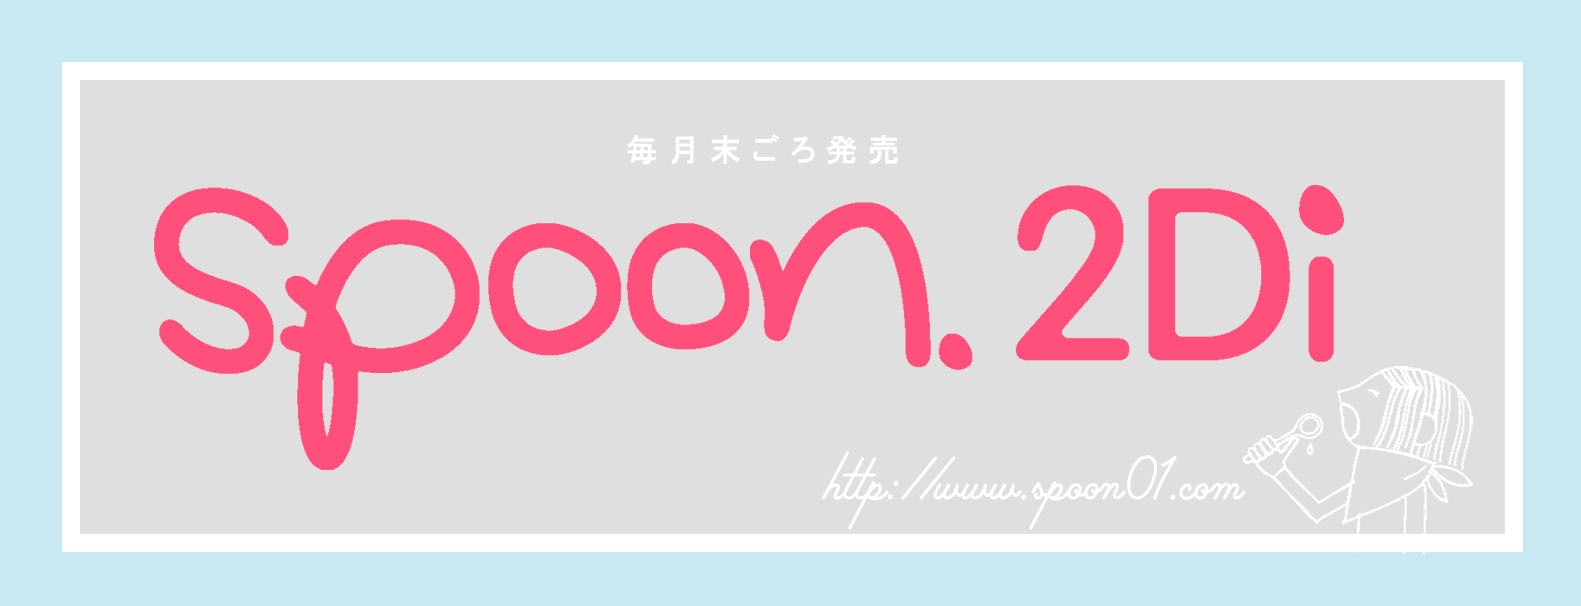 spoon.2Di 編集部 web shop